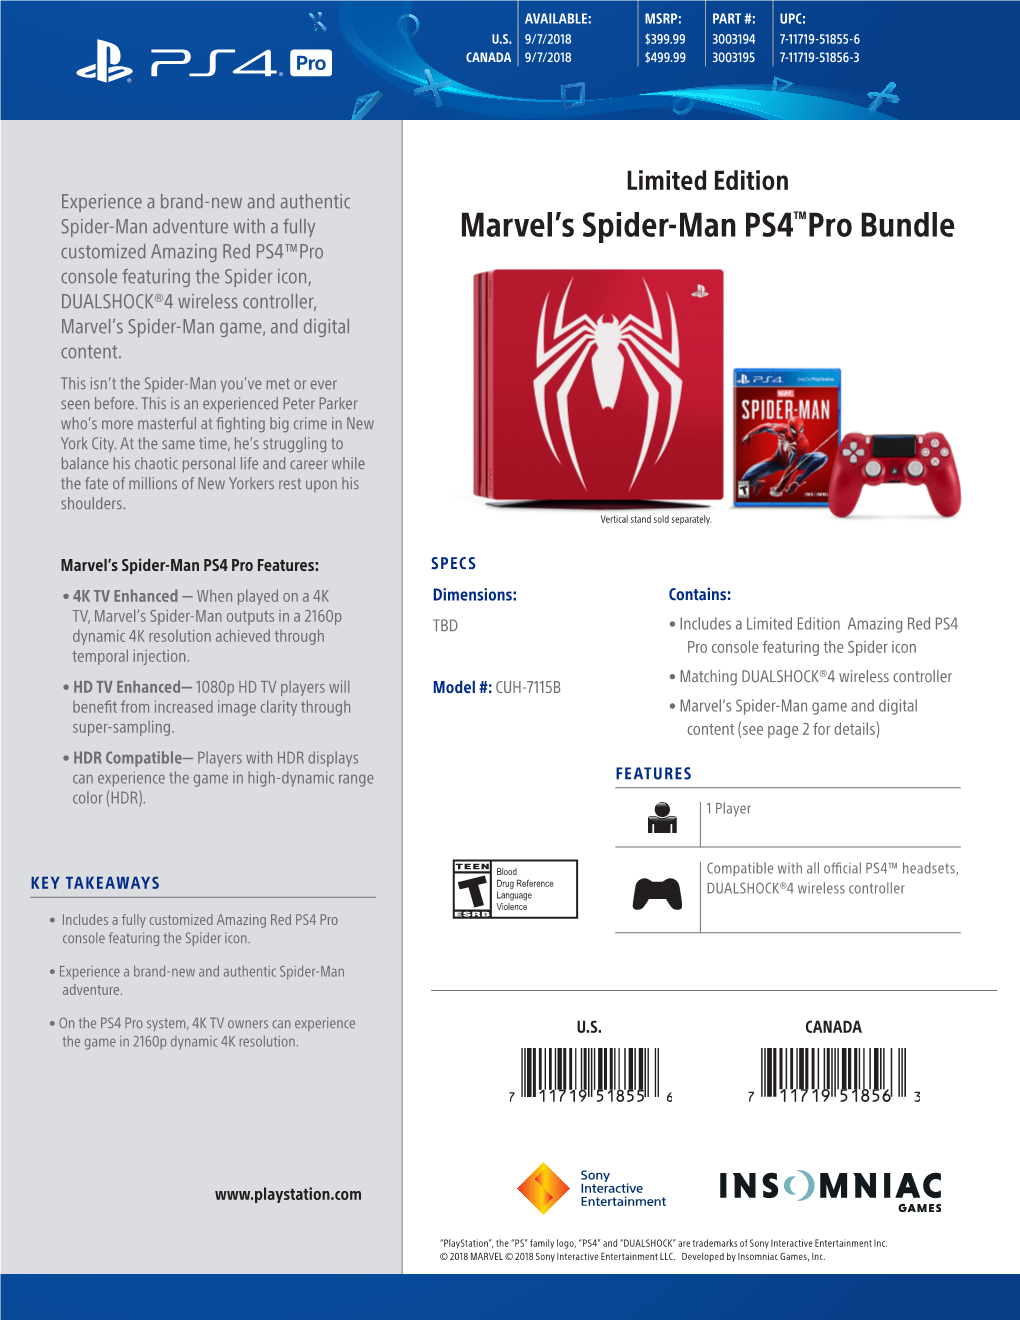 Marvel's Spider-Man PS4™Pro Bundle